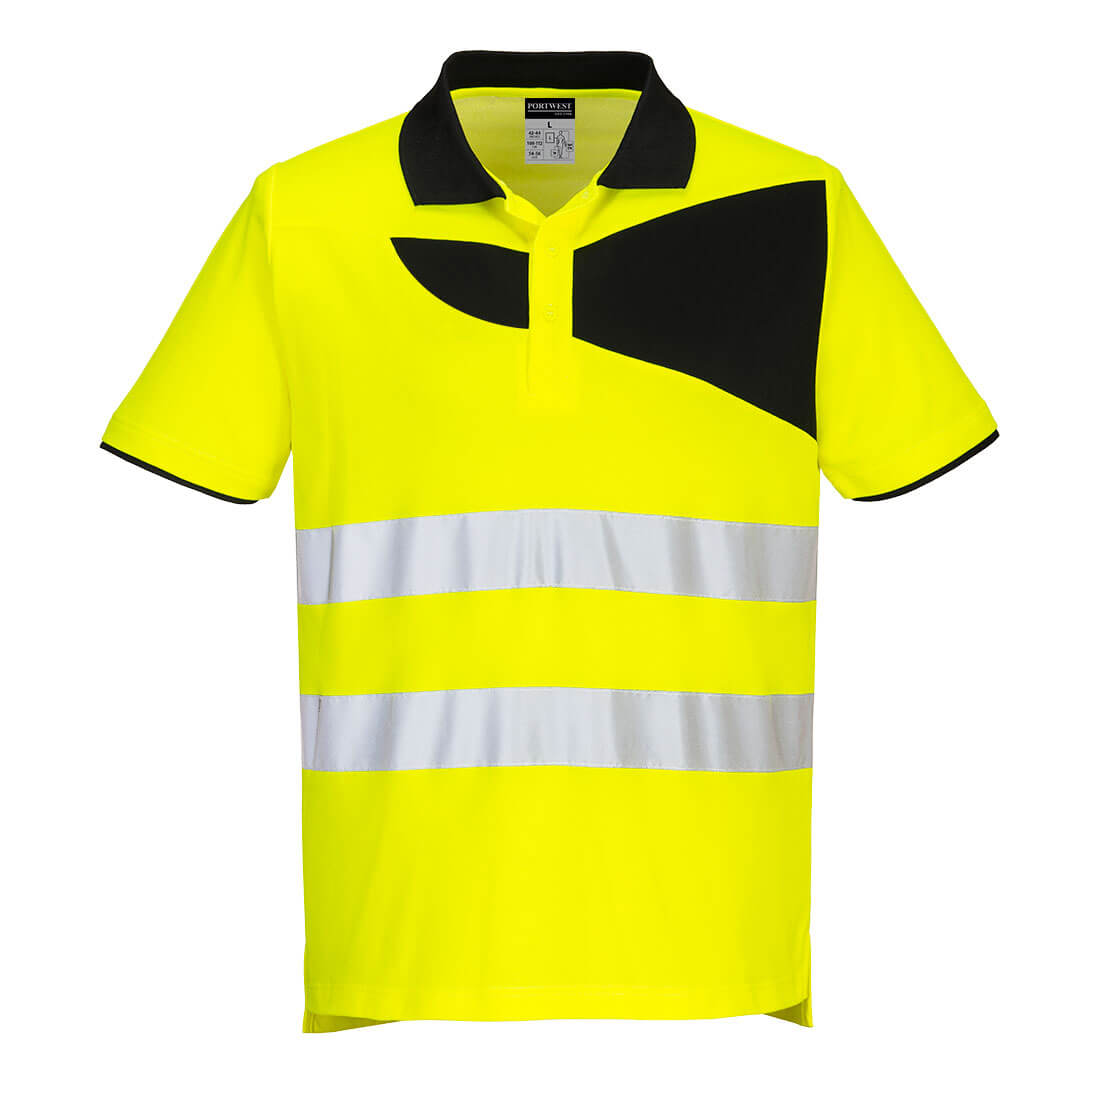 PW2 Hi-Vis Polo Shirt S/S - Yellow/Black